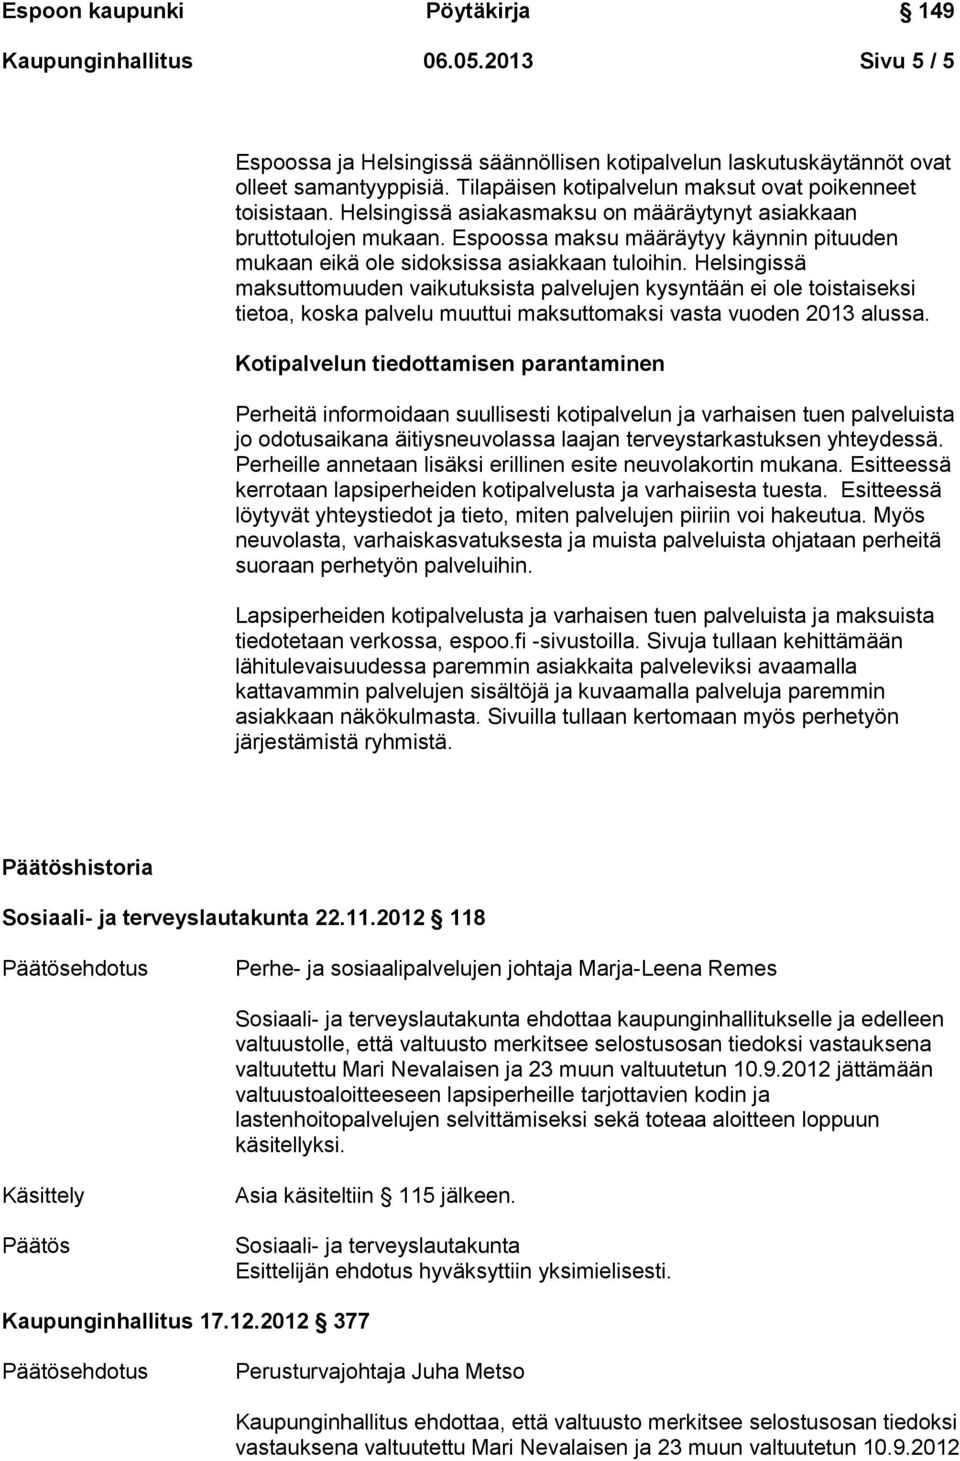 Helsingissä maksuttomuuden vaikutuksista palvelujen kysyntään ei ole toistaiseksi tietoa, koska palvelu muuttui maksuttomaksi vasta vuoden 2013 alussa.